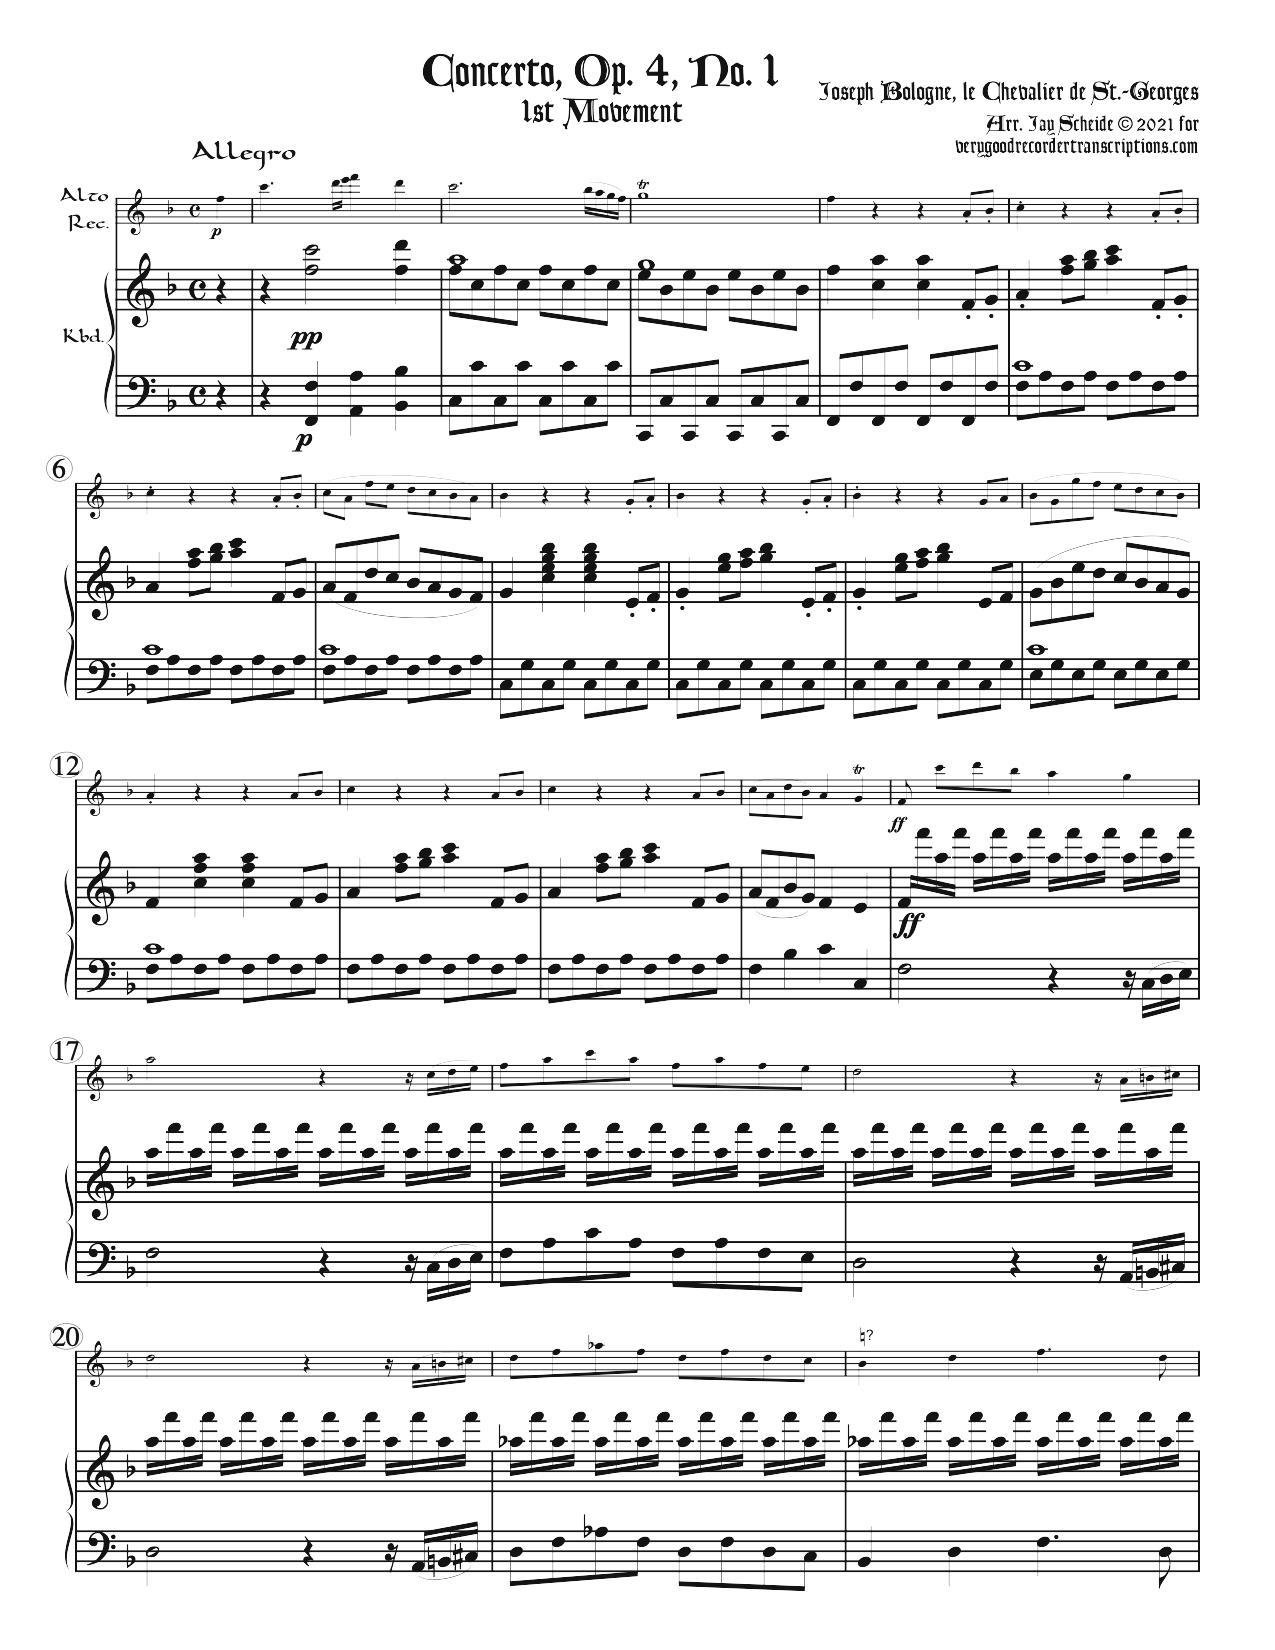 Three Concertos, Op. 4, No. 1, Op. 5, No. 1 & 2, and 1st Mvt. of Op. 7, No. 1